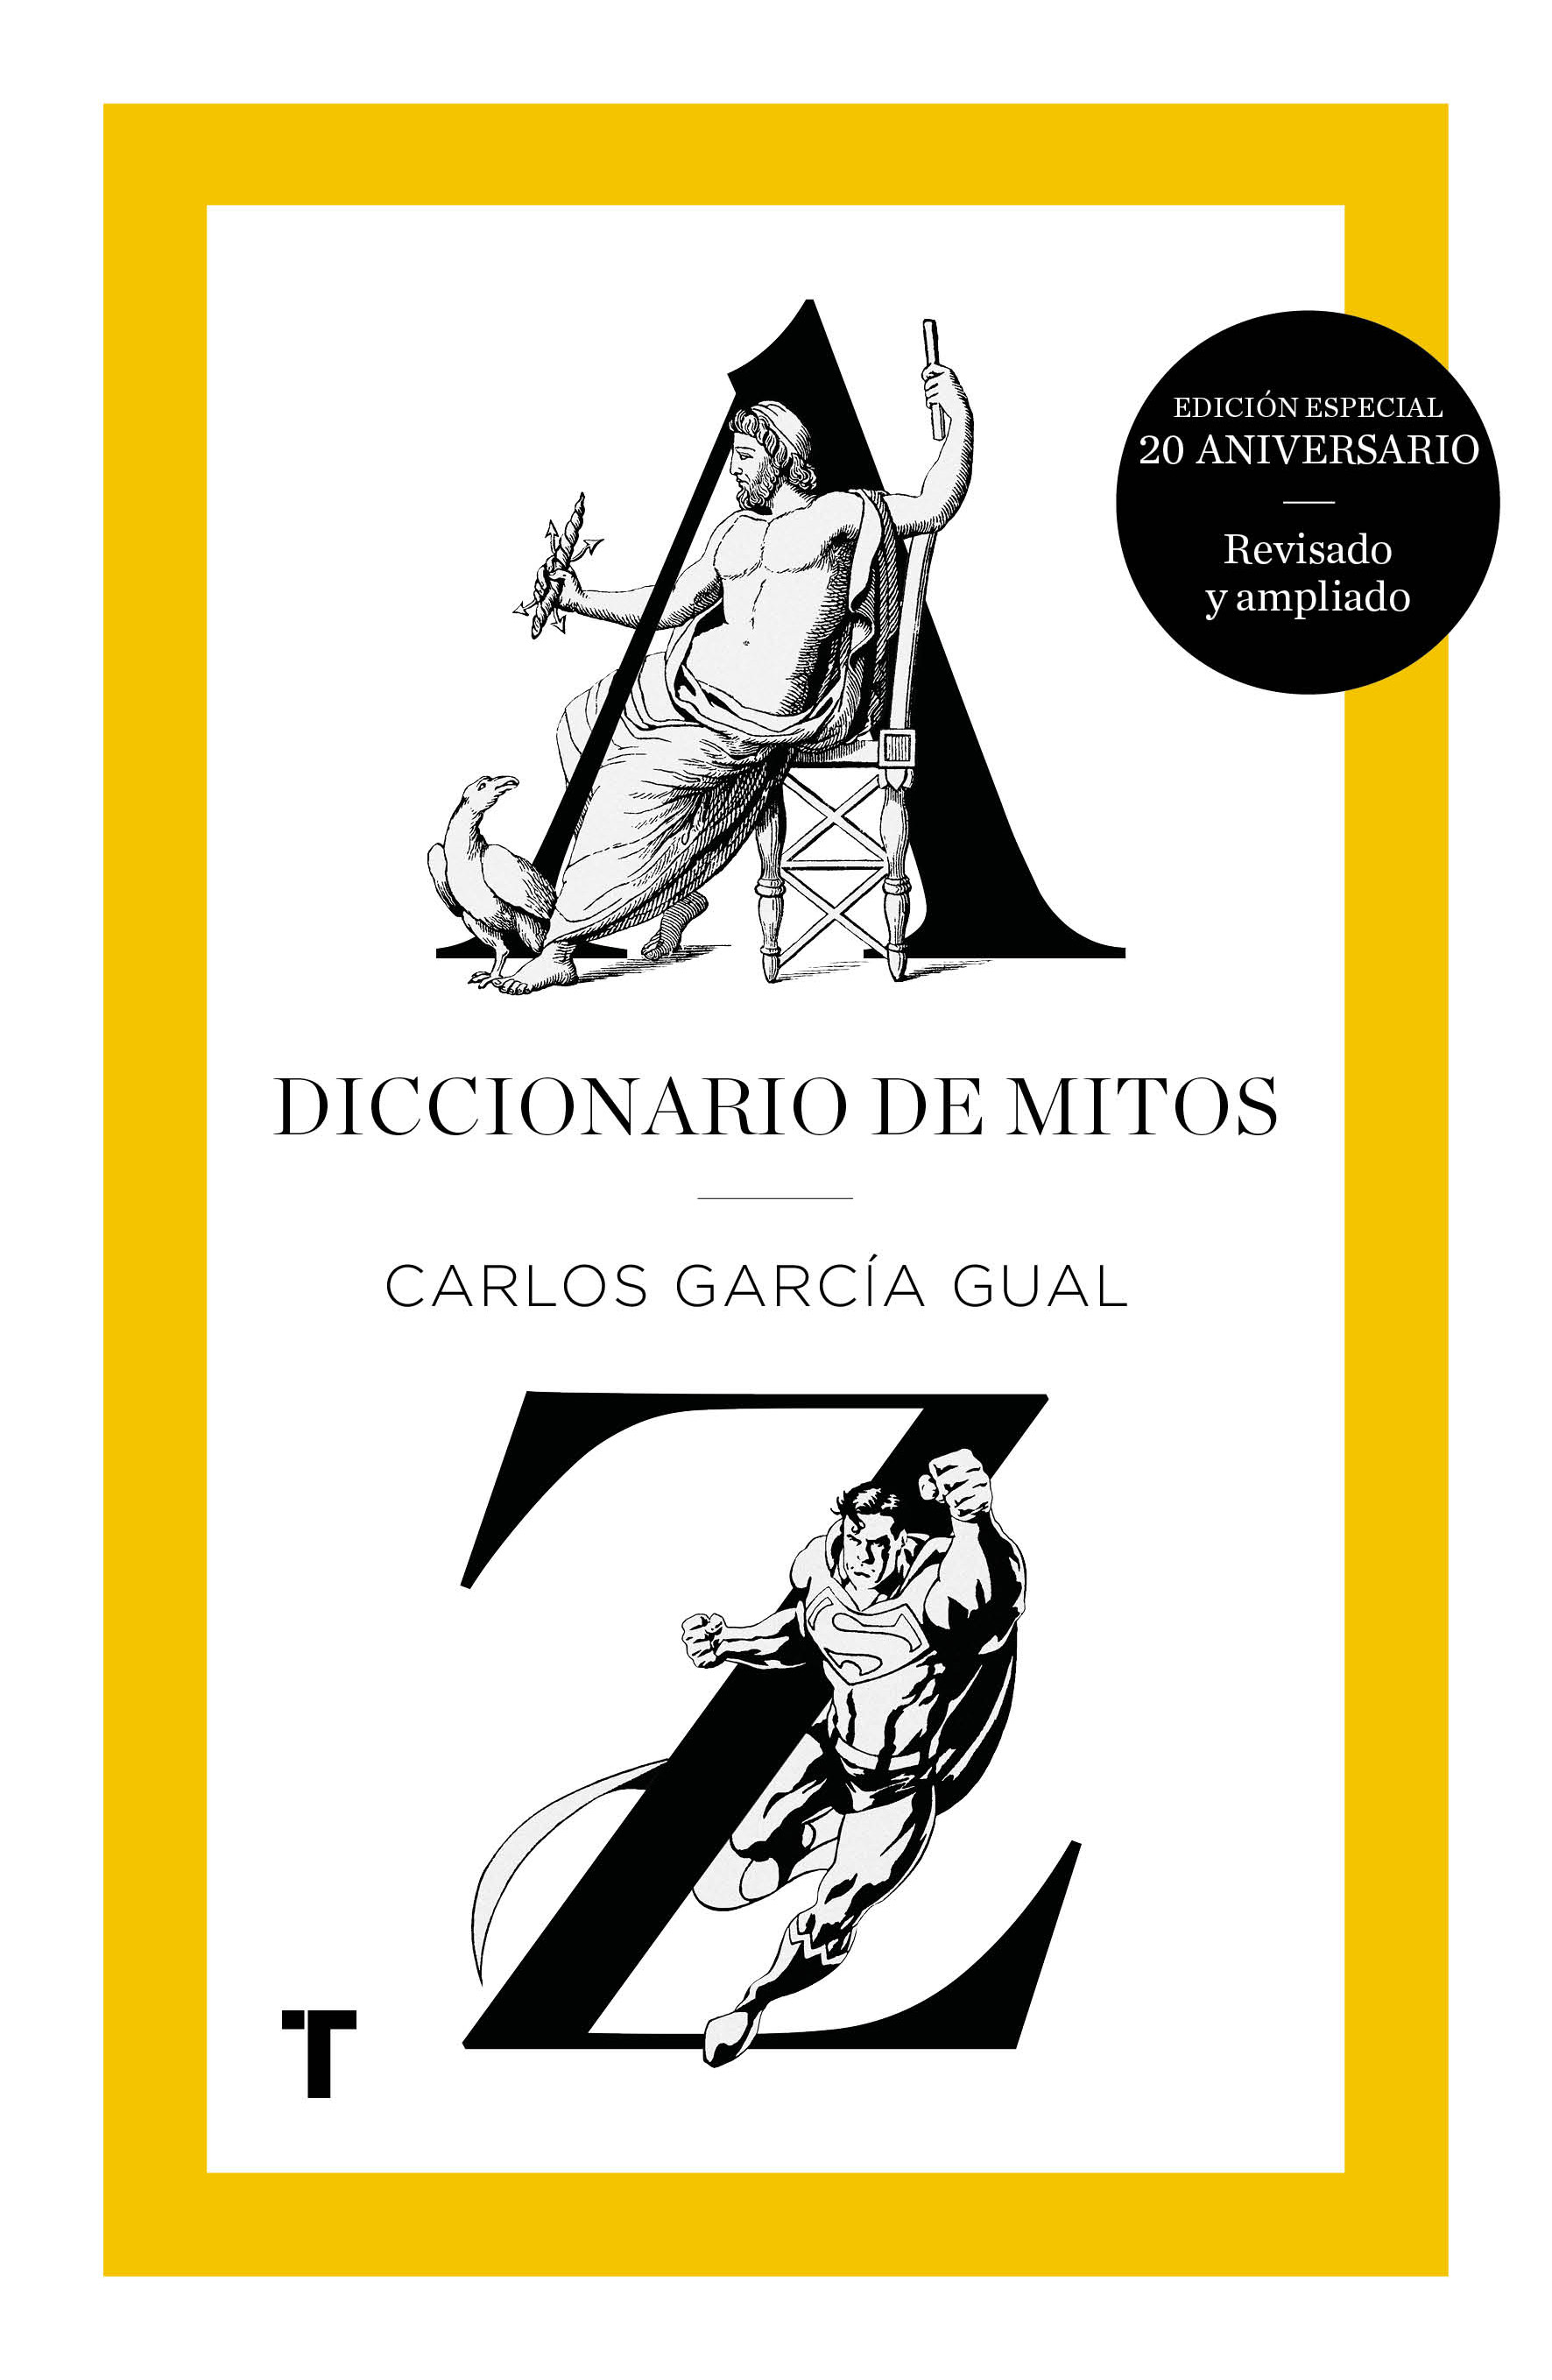 CARLOS GARCÍA GUAL. Diccionario de mitos (Turner)